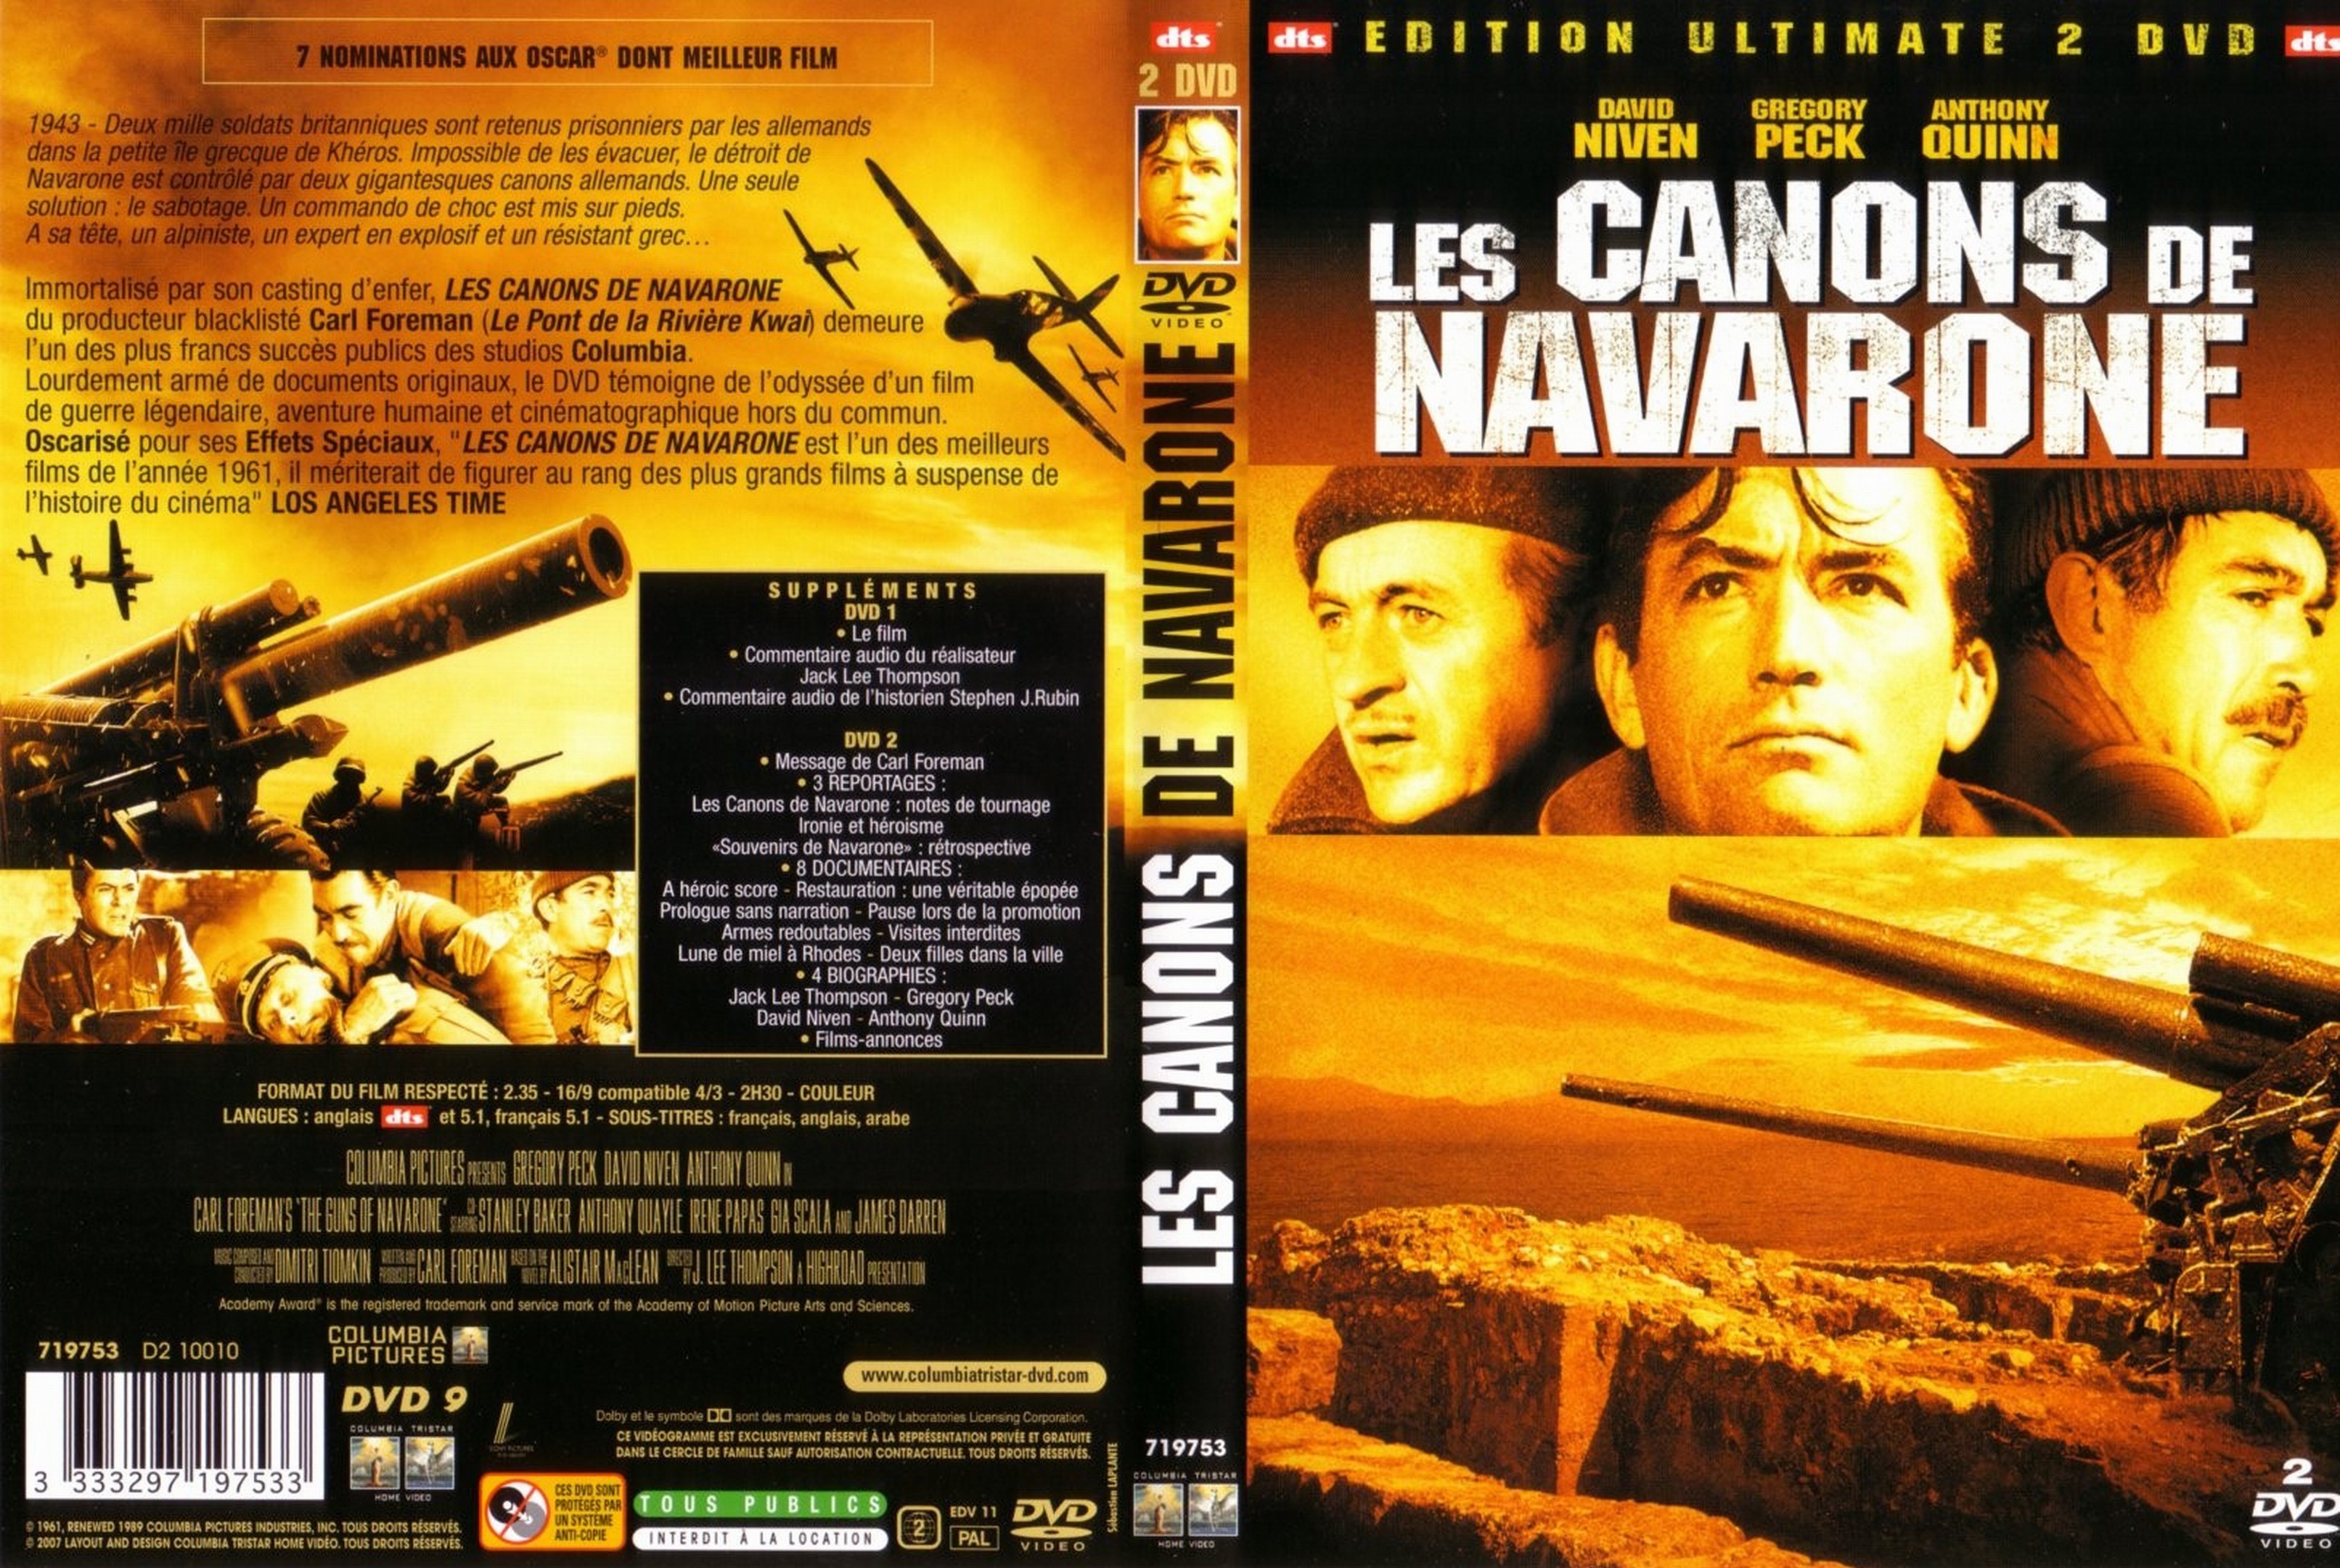 Jaquette DVD Les canons de Navarone v3